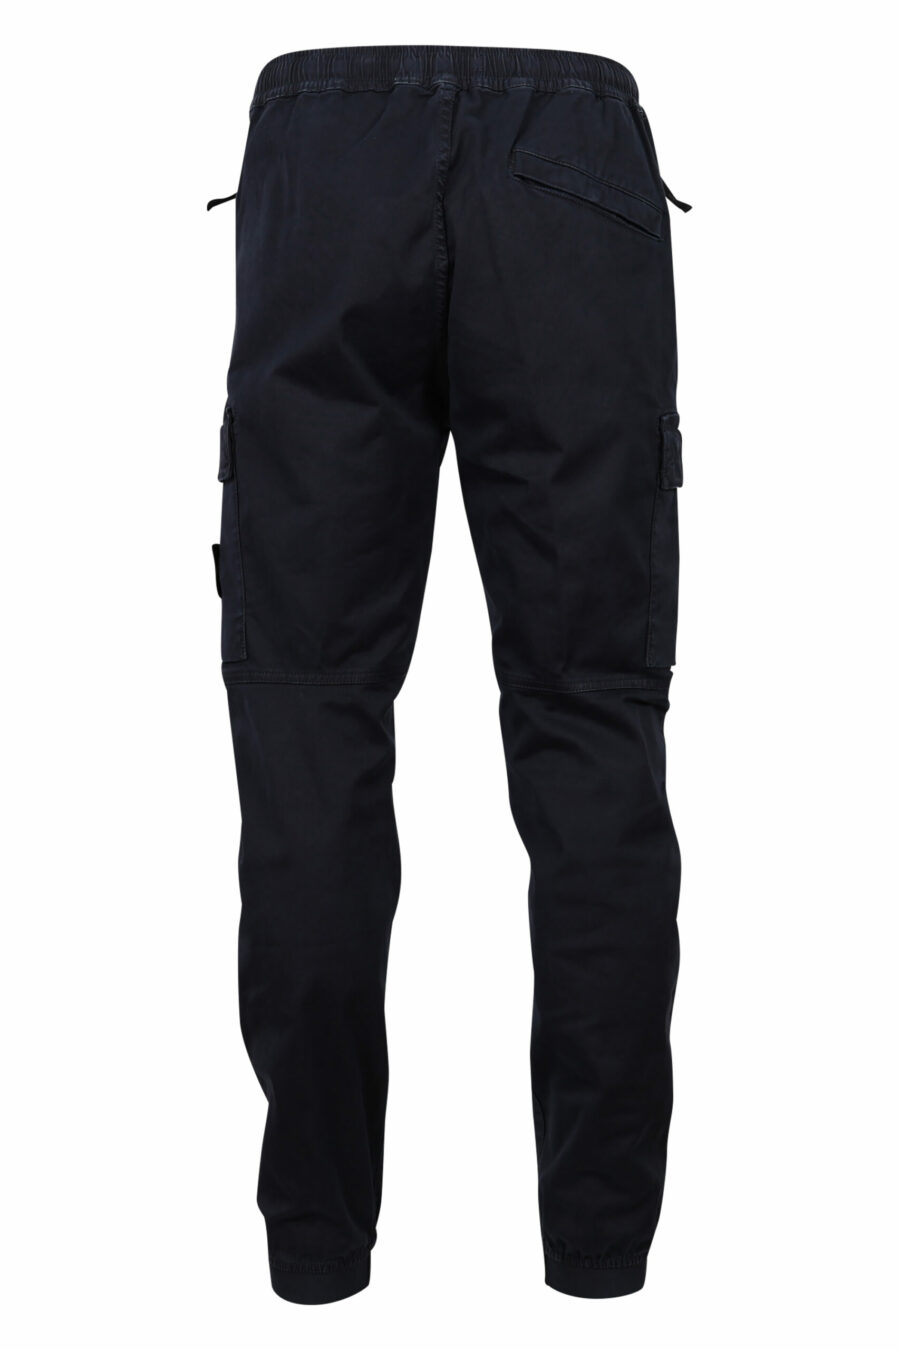 Pantalón azul oscuro con logo lateral parche - 8052572735219 2 scaled